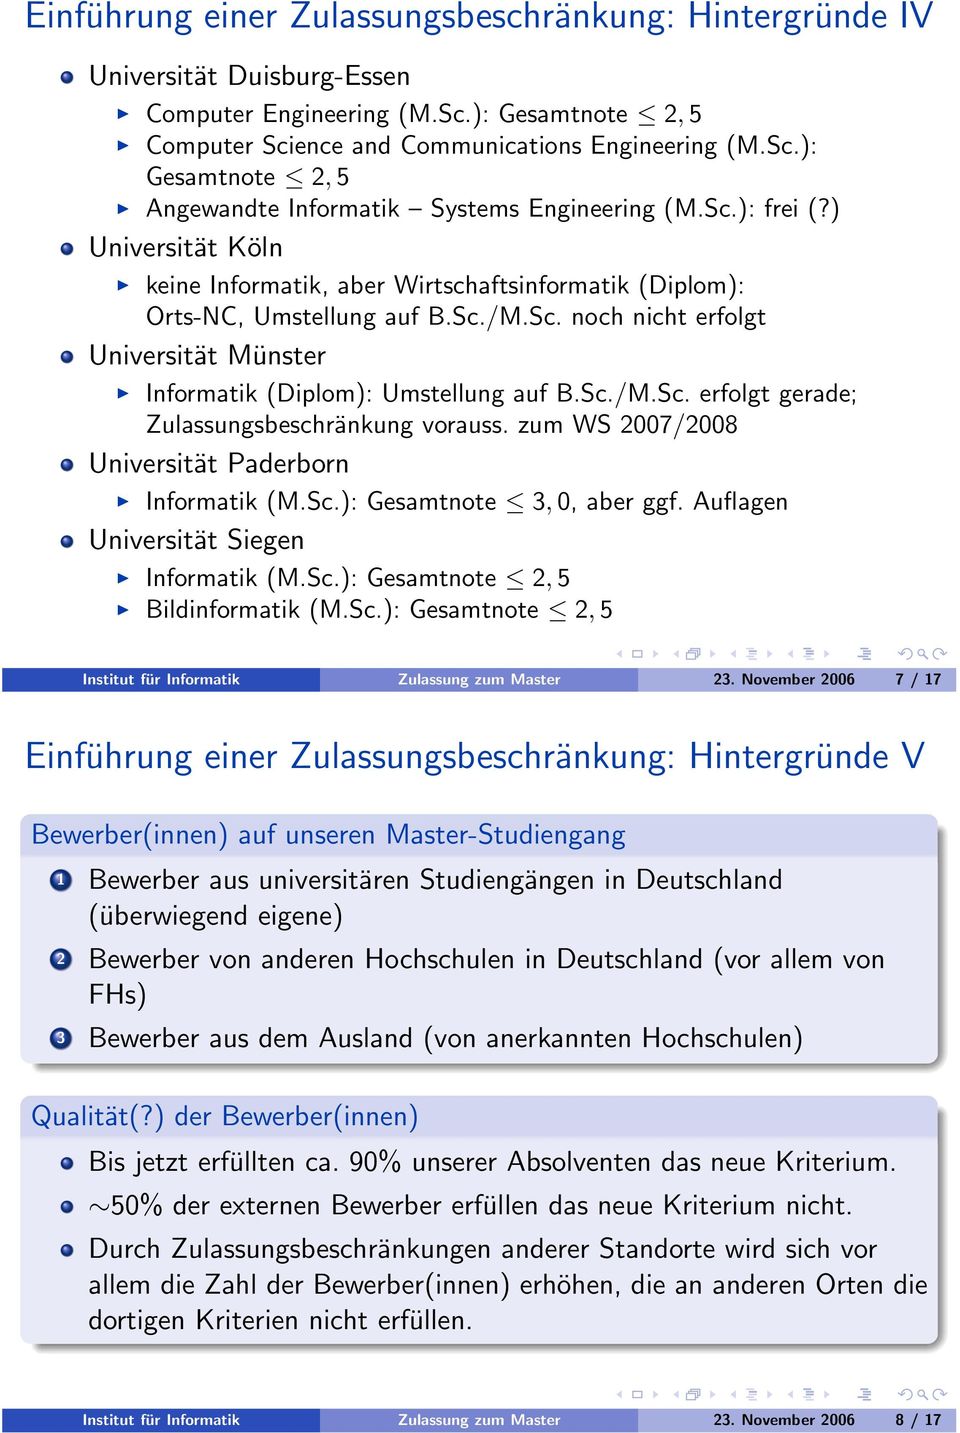 Sc./M.Sc. erfolgt gerade; Zulassungsbeschränkung vorauss. zum WS 2007/2008 Universität Paderborn Informatik (M.Sc.): Gesamtnote 3,0, aber ggf. Auflagen Universität Siegen Informatik (M.Sc.): Gesamtnote 2,5 Bildinformatik (M.